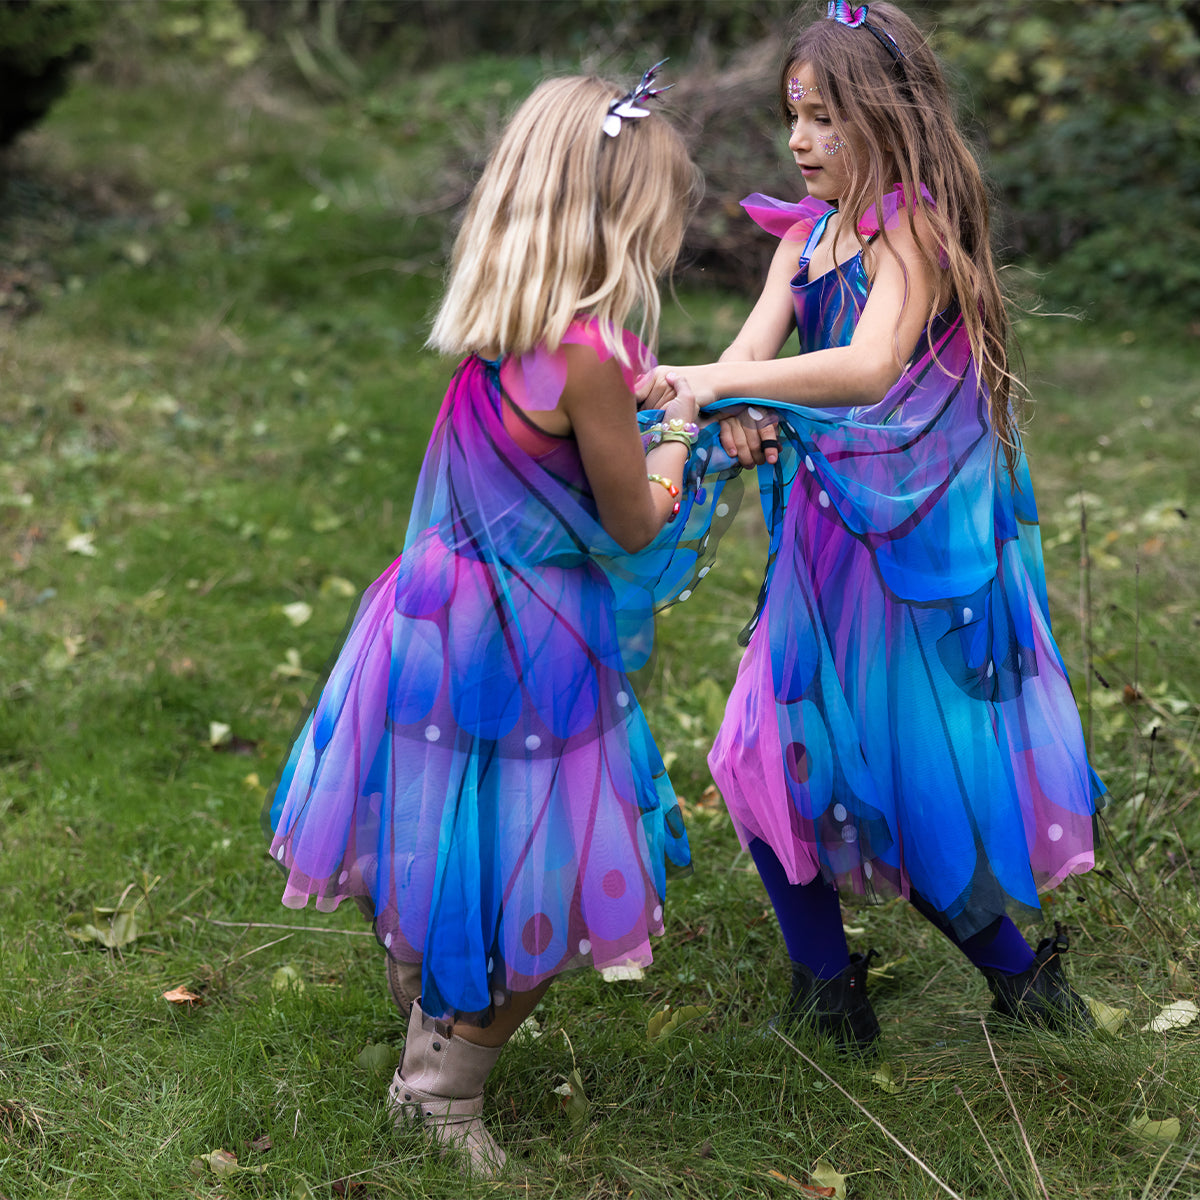 Laat je kind stralen in deze te schattige vlinder jurk met vleugels en hoofdband in blue/purple van het merk Great Pretenders! Deze betoverende verkleedset is perfect voor kleine elfjes en meisjes die gek zijn op vlinders! De prachtige jurk heeft een mooi ombre patroon van blauw en paars. 